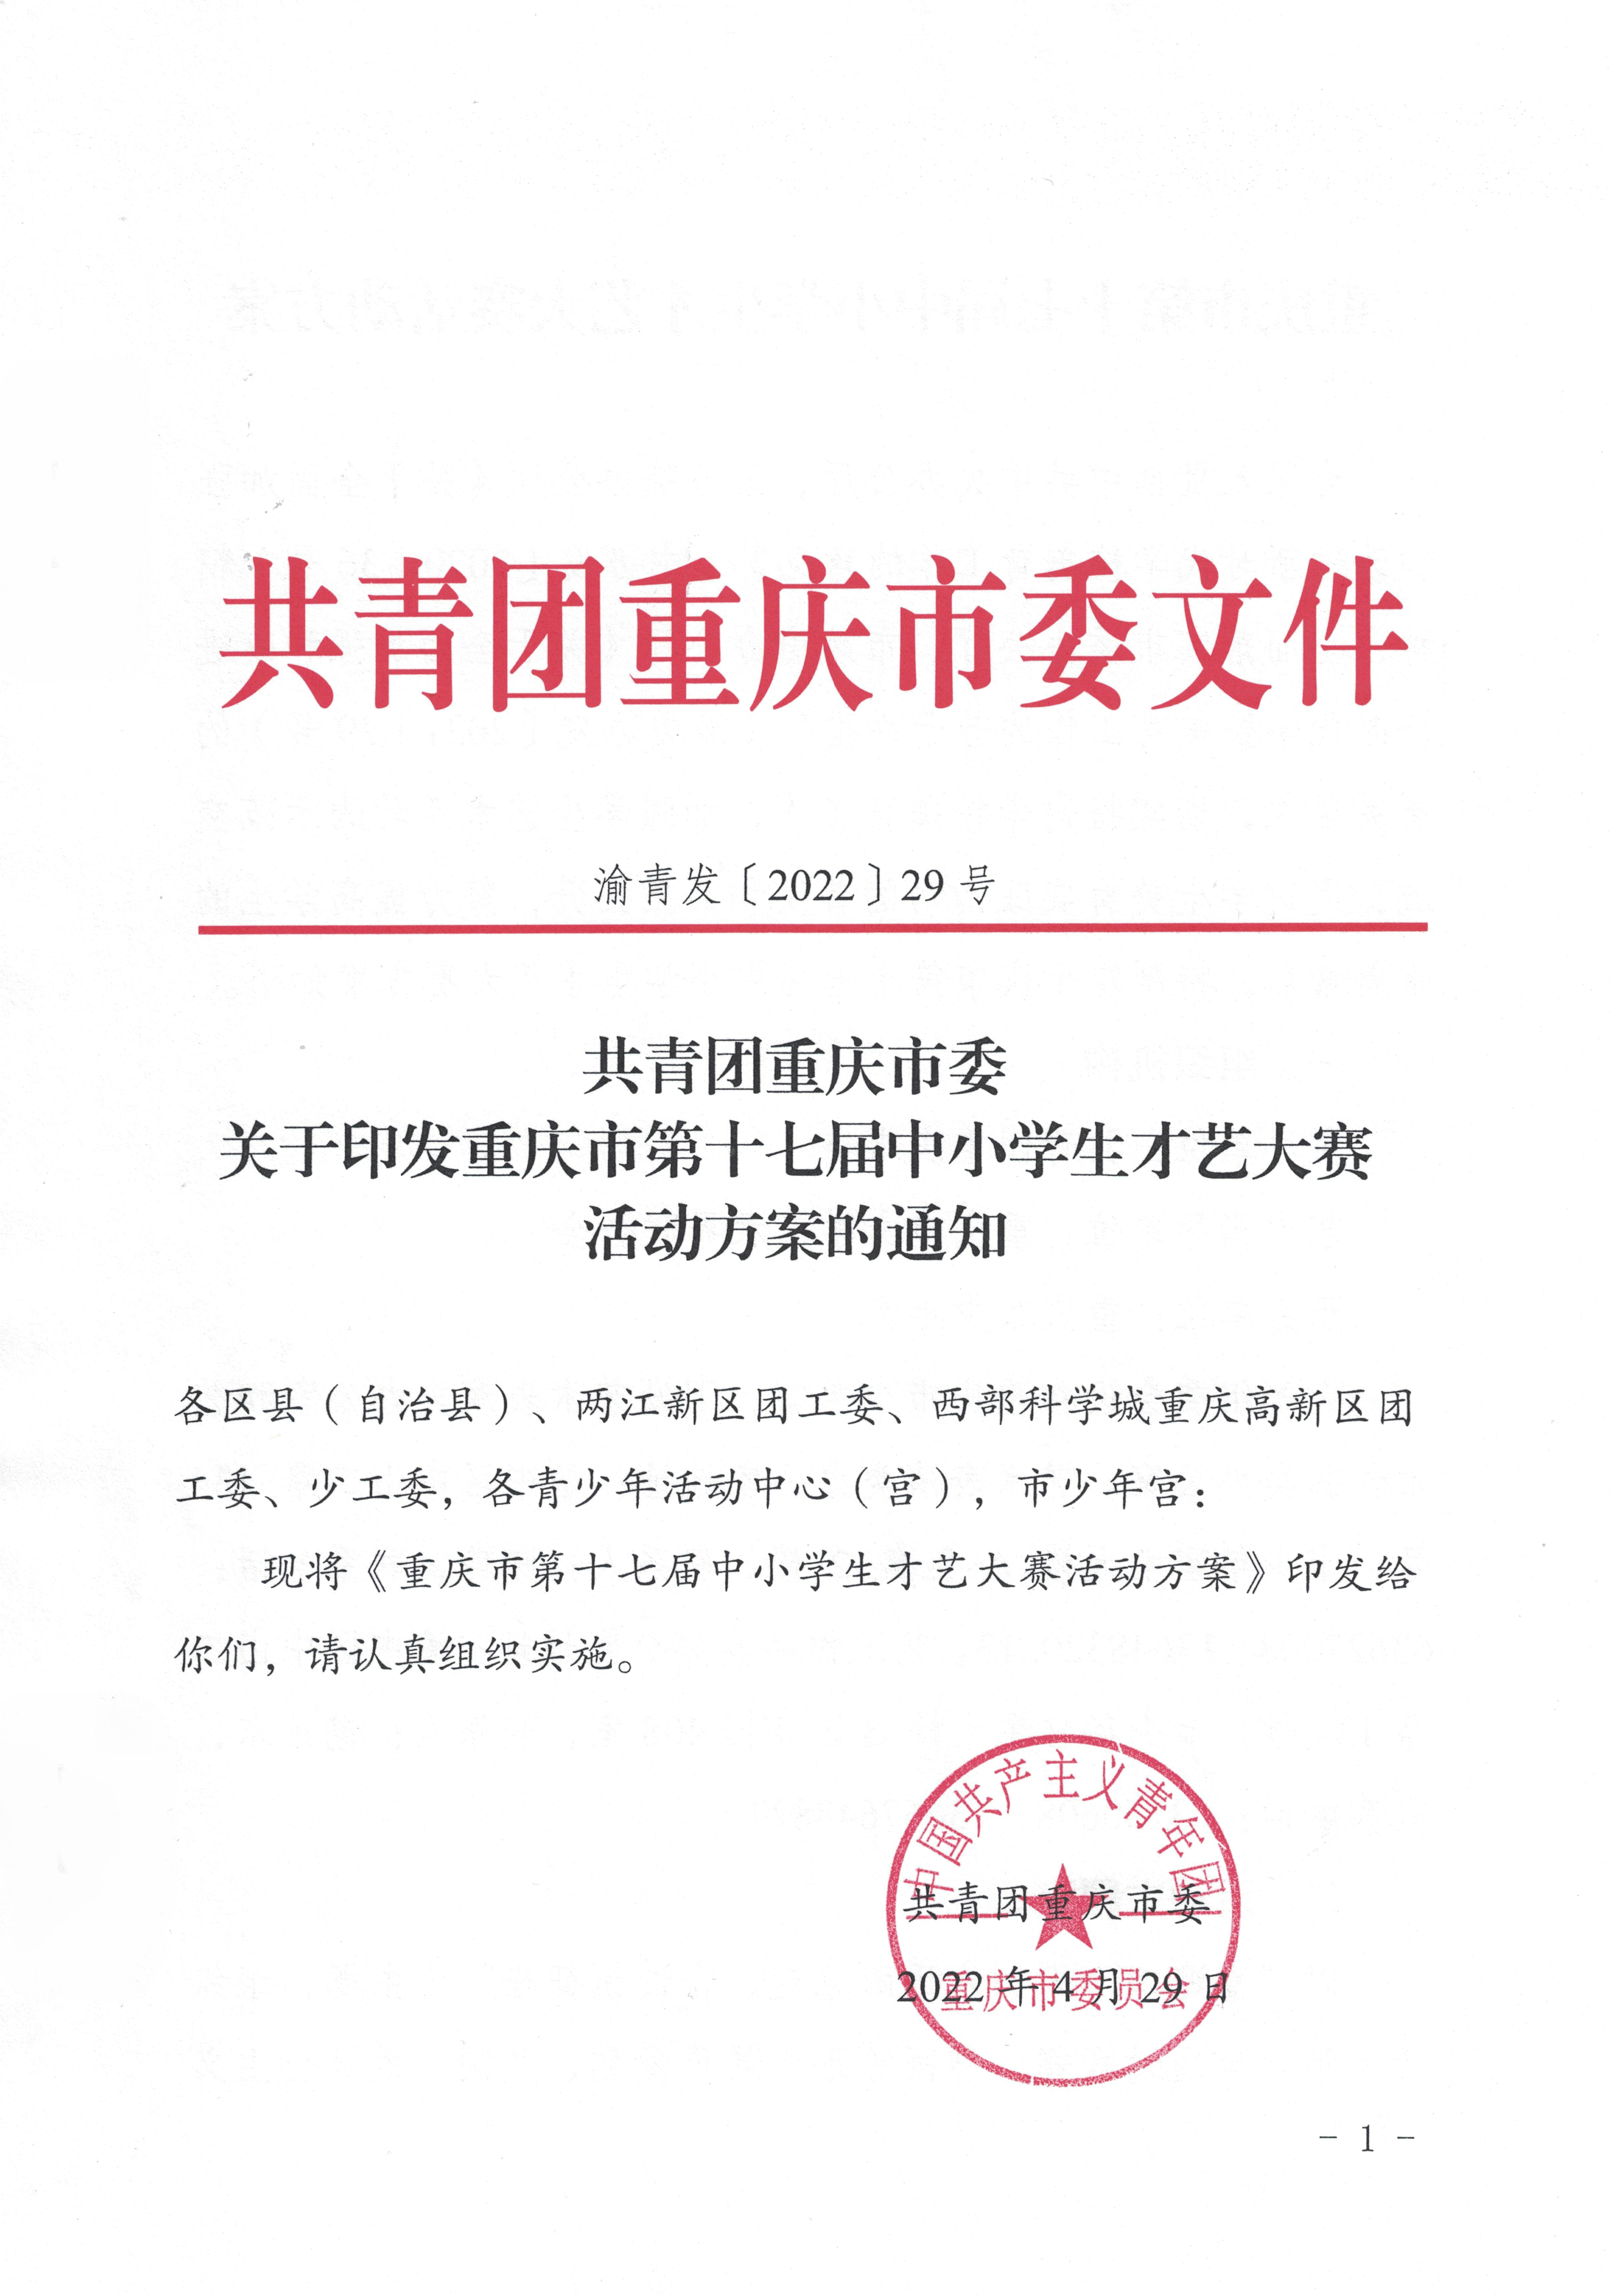 2022共青团重庆市委关于印发重庆市第十七届中小学生才艺大赛活动方案的通知 第1张